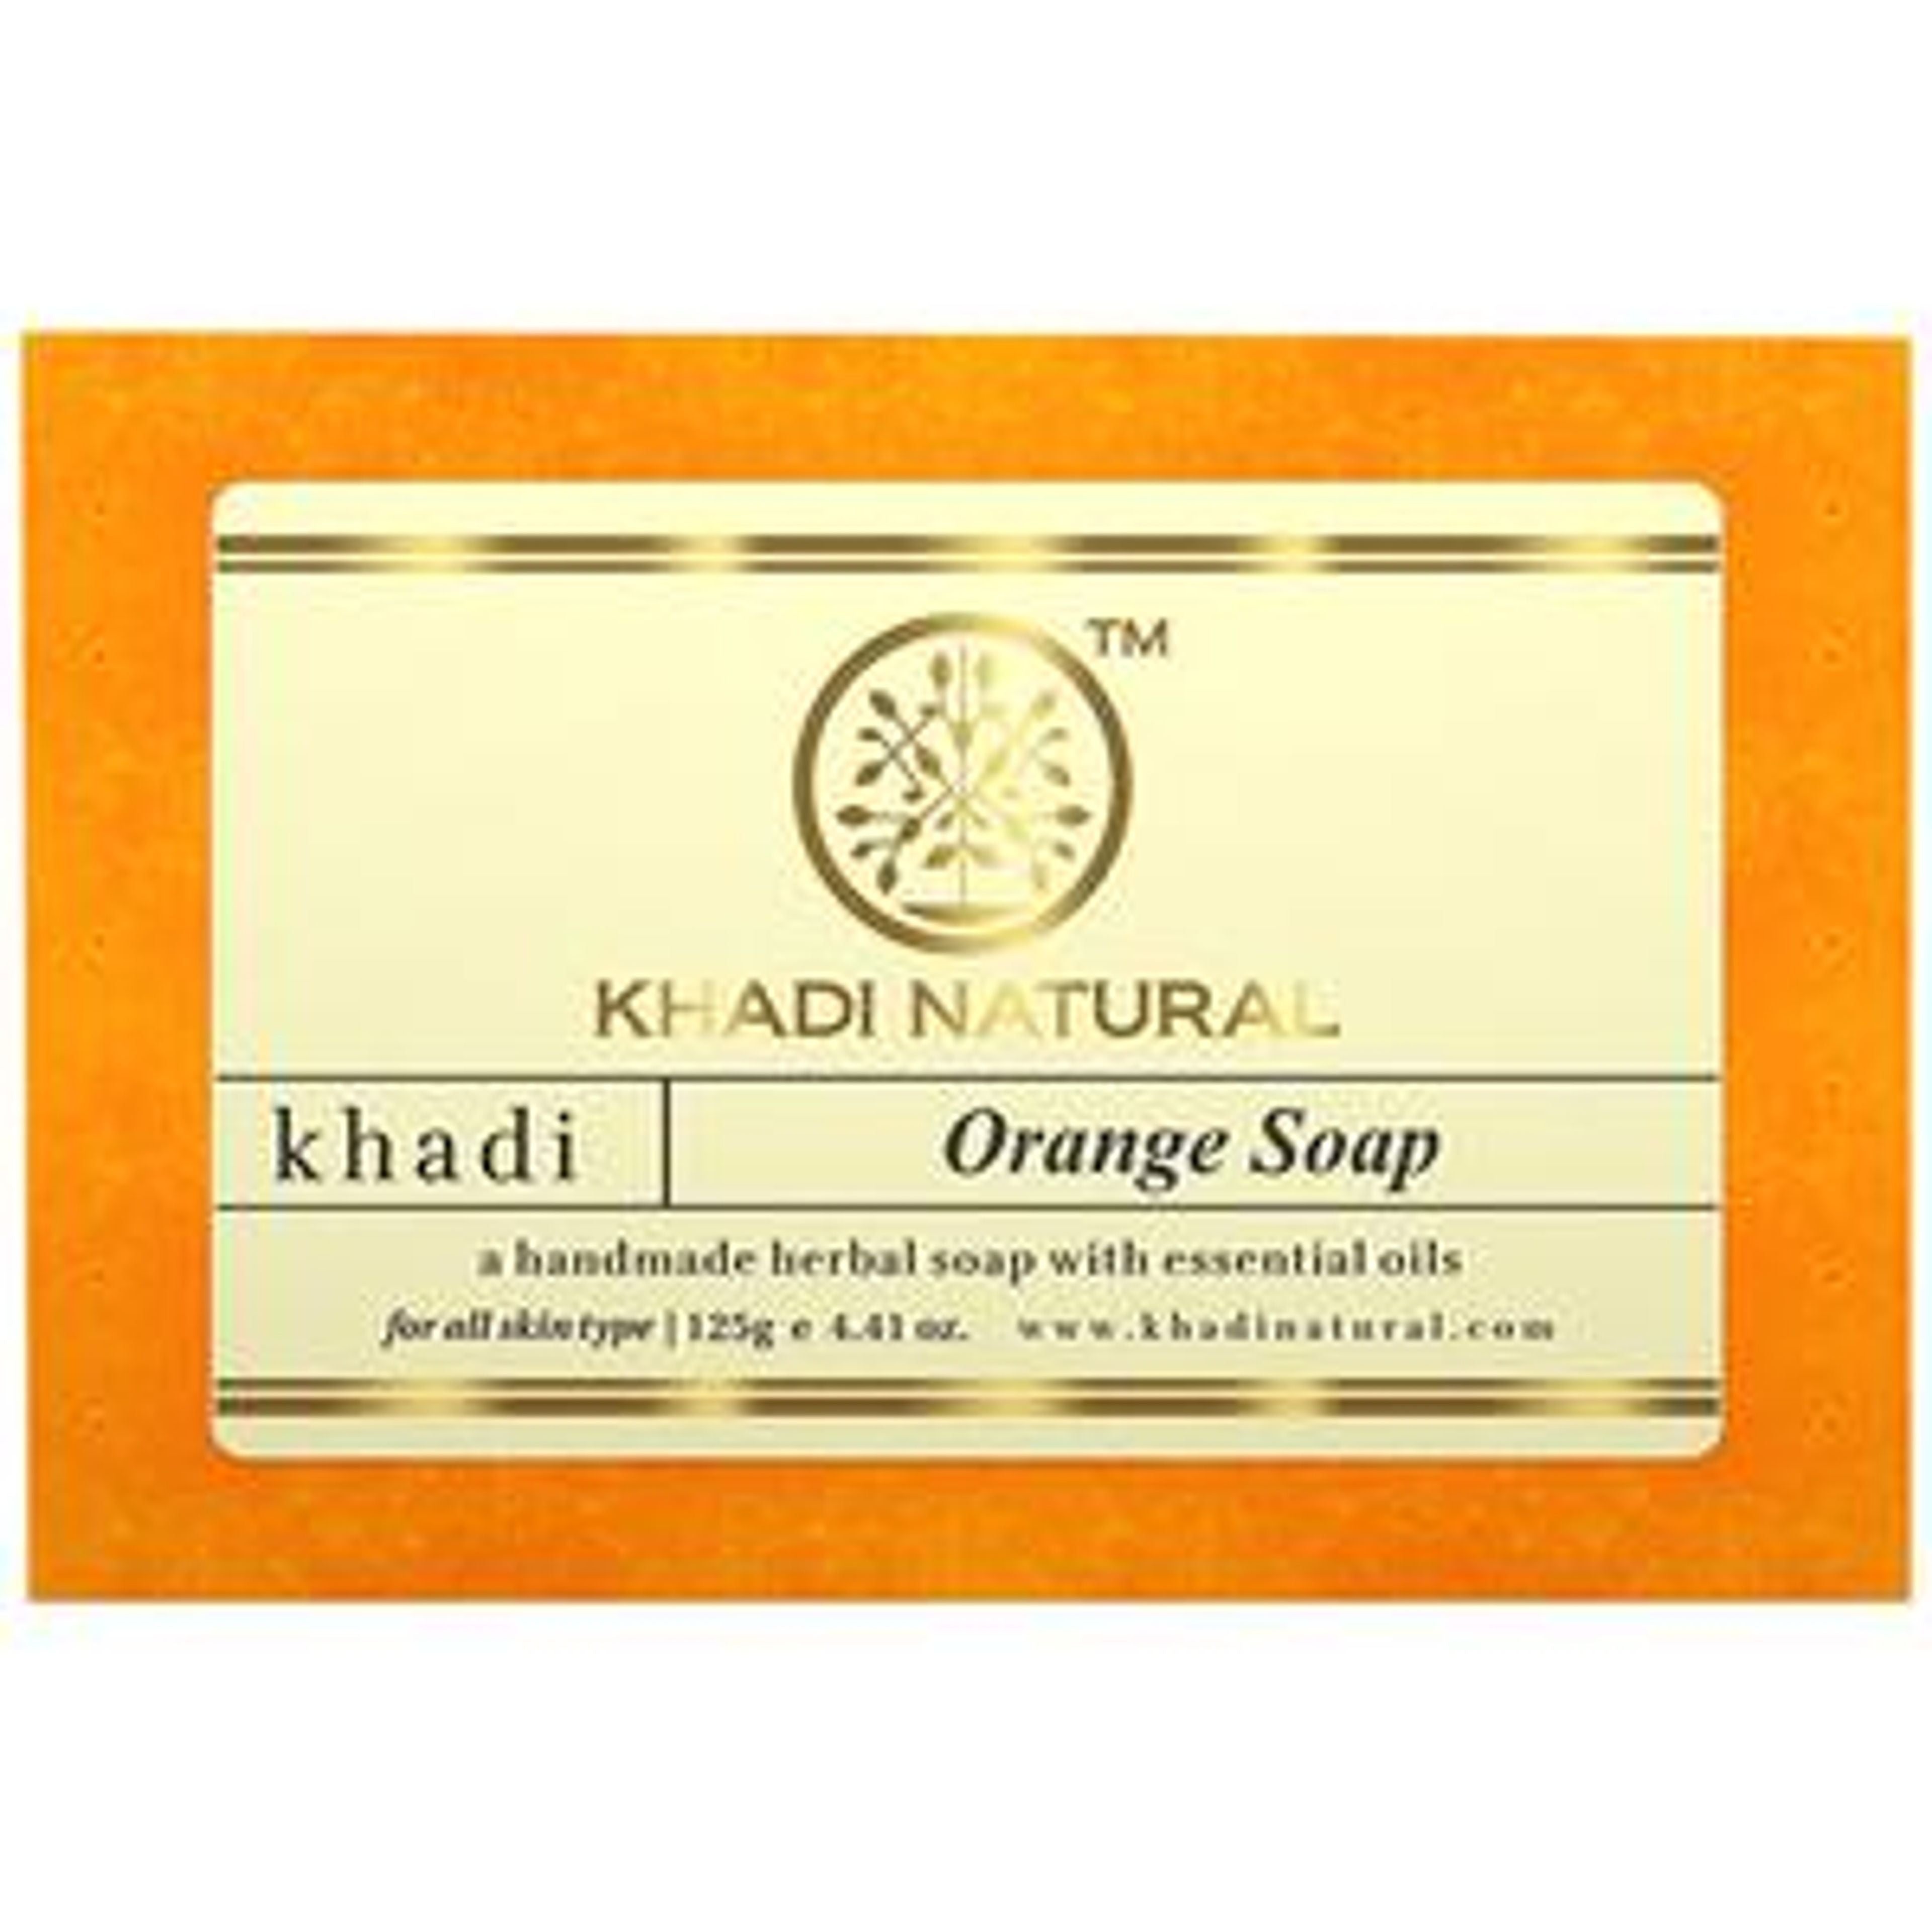 Khadi Natural Orange Handmade Herbal Soap